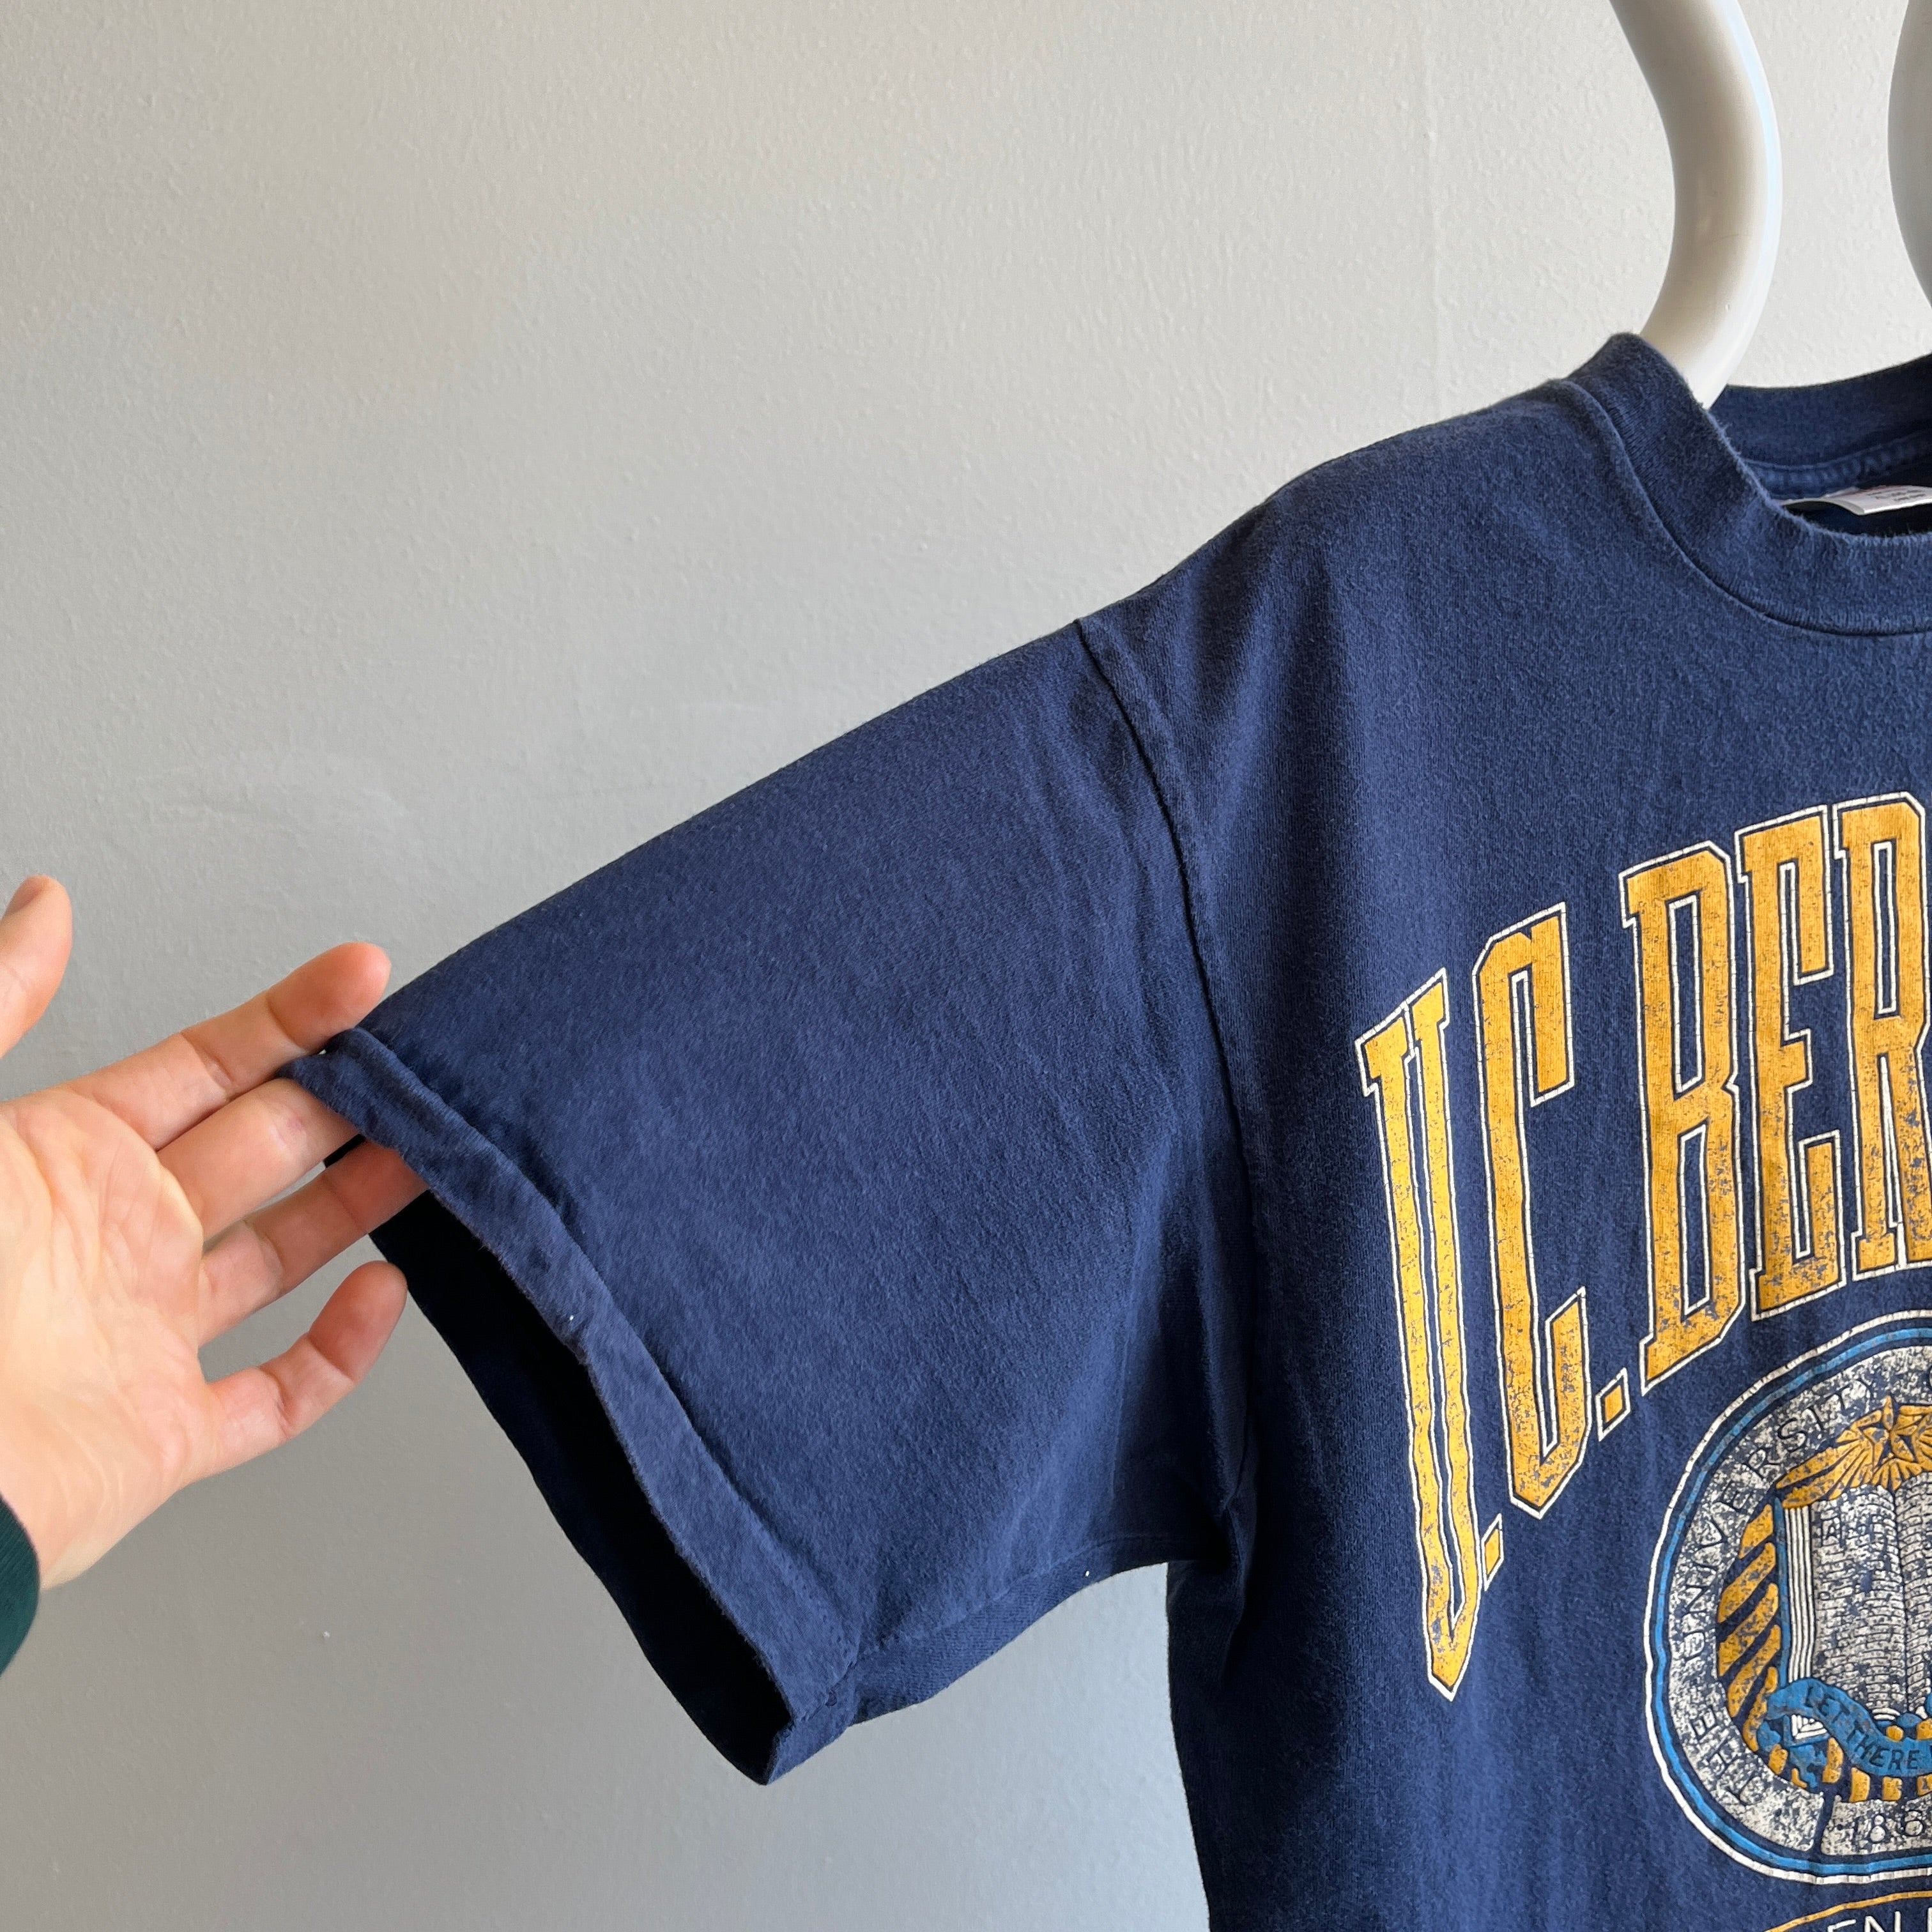 T-shirt UC Berkeley des années 1990 par Oneita